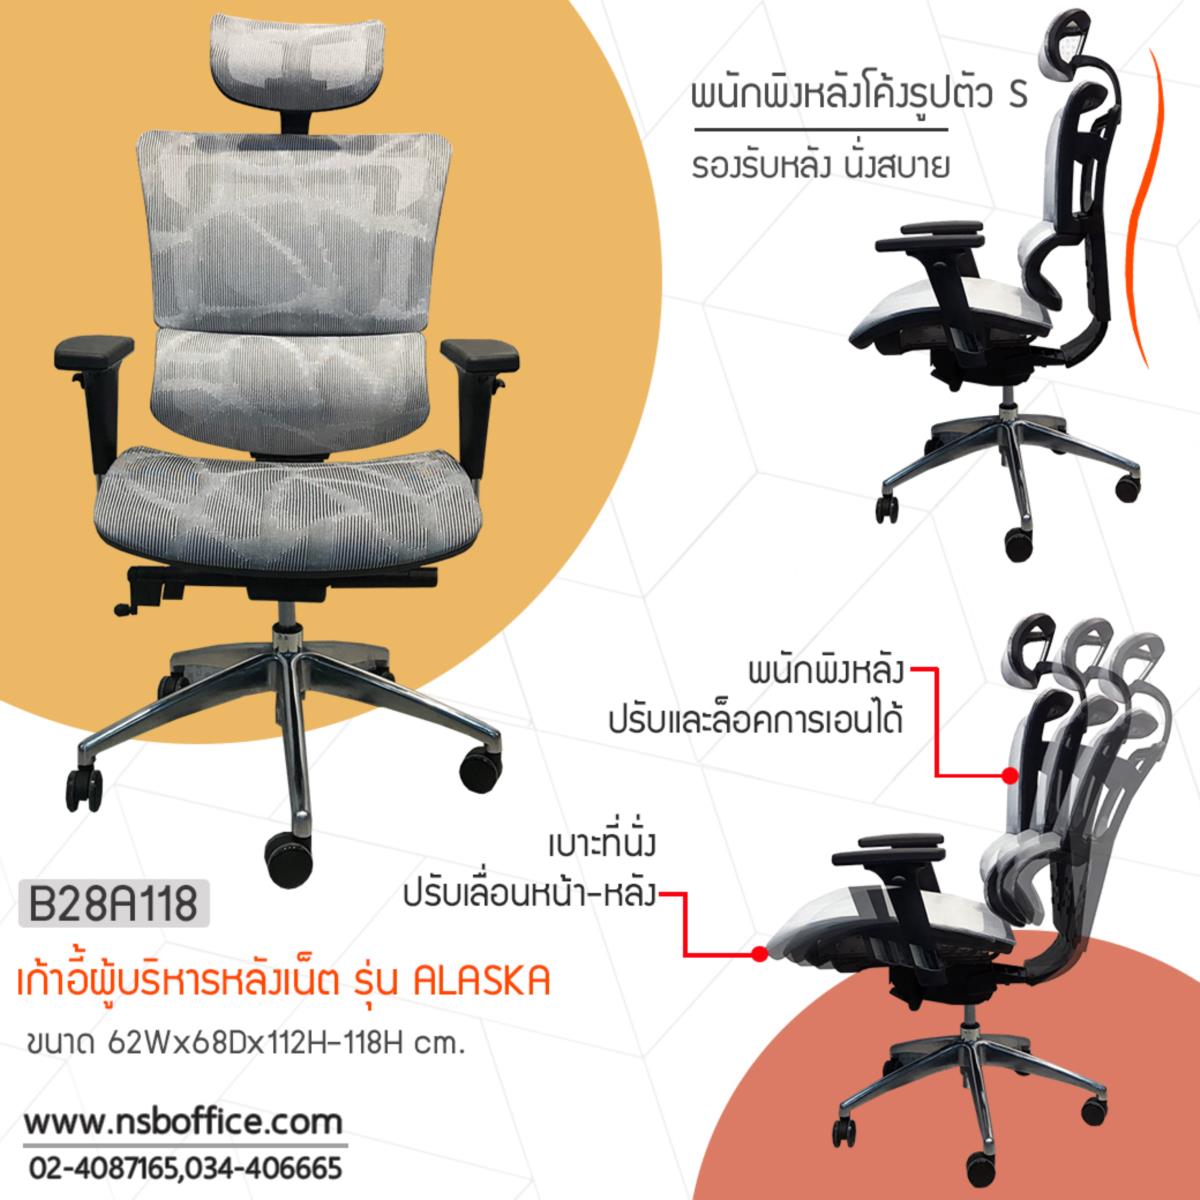 เก้าอี้เพื่อสุขภาพ รุ่น Ergonomic trendy-A  เคลื่อนที่ 4 ระบบ ขาอลูมินั่ม